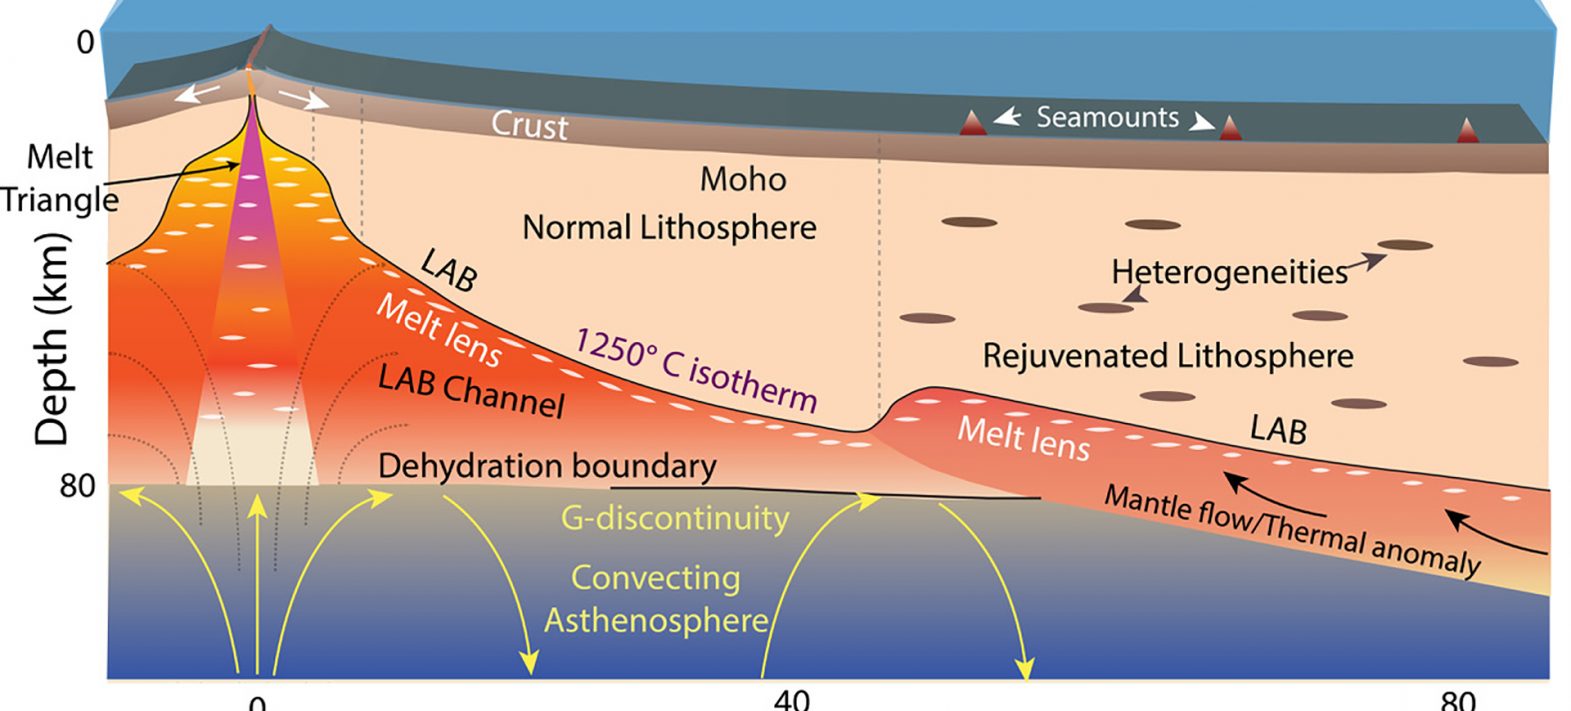 L’imagerie sismique haute résolution lève le voile sur la frontière lithosphère-asthénosphère